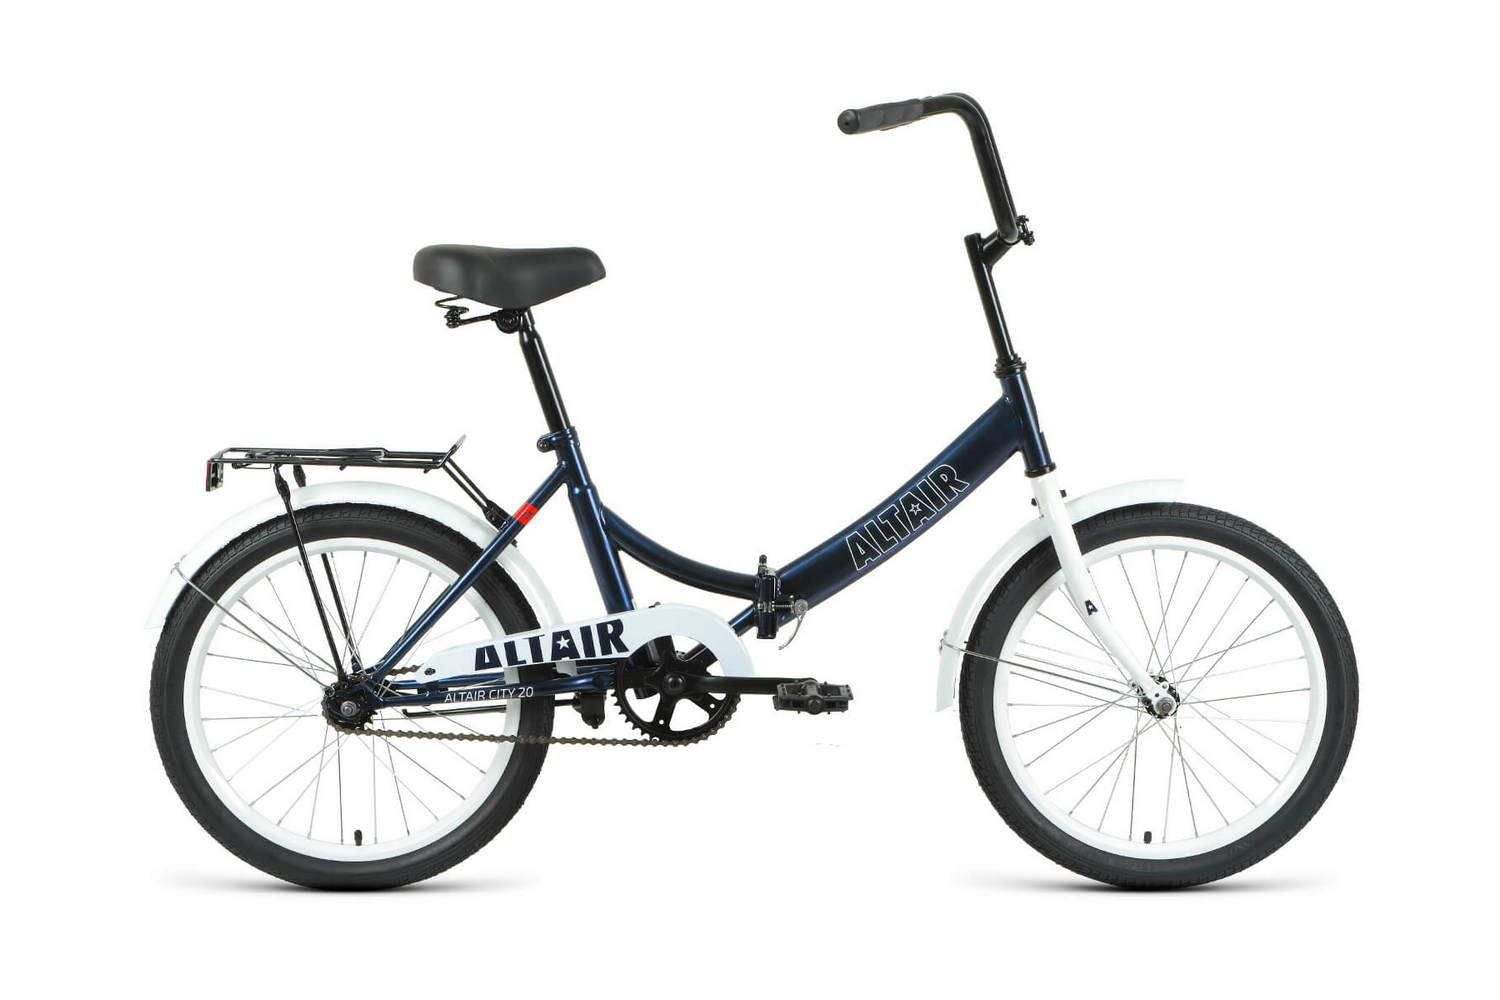 Складной велосипед Altair City 20, год 2022, цвет Зеленый-Черный, ростовка 14